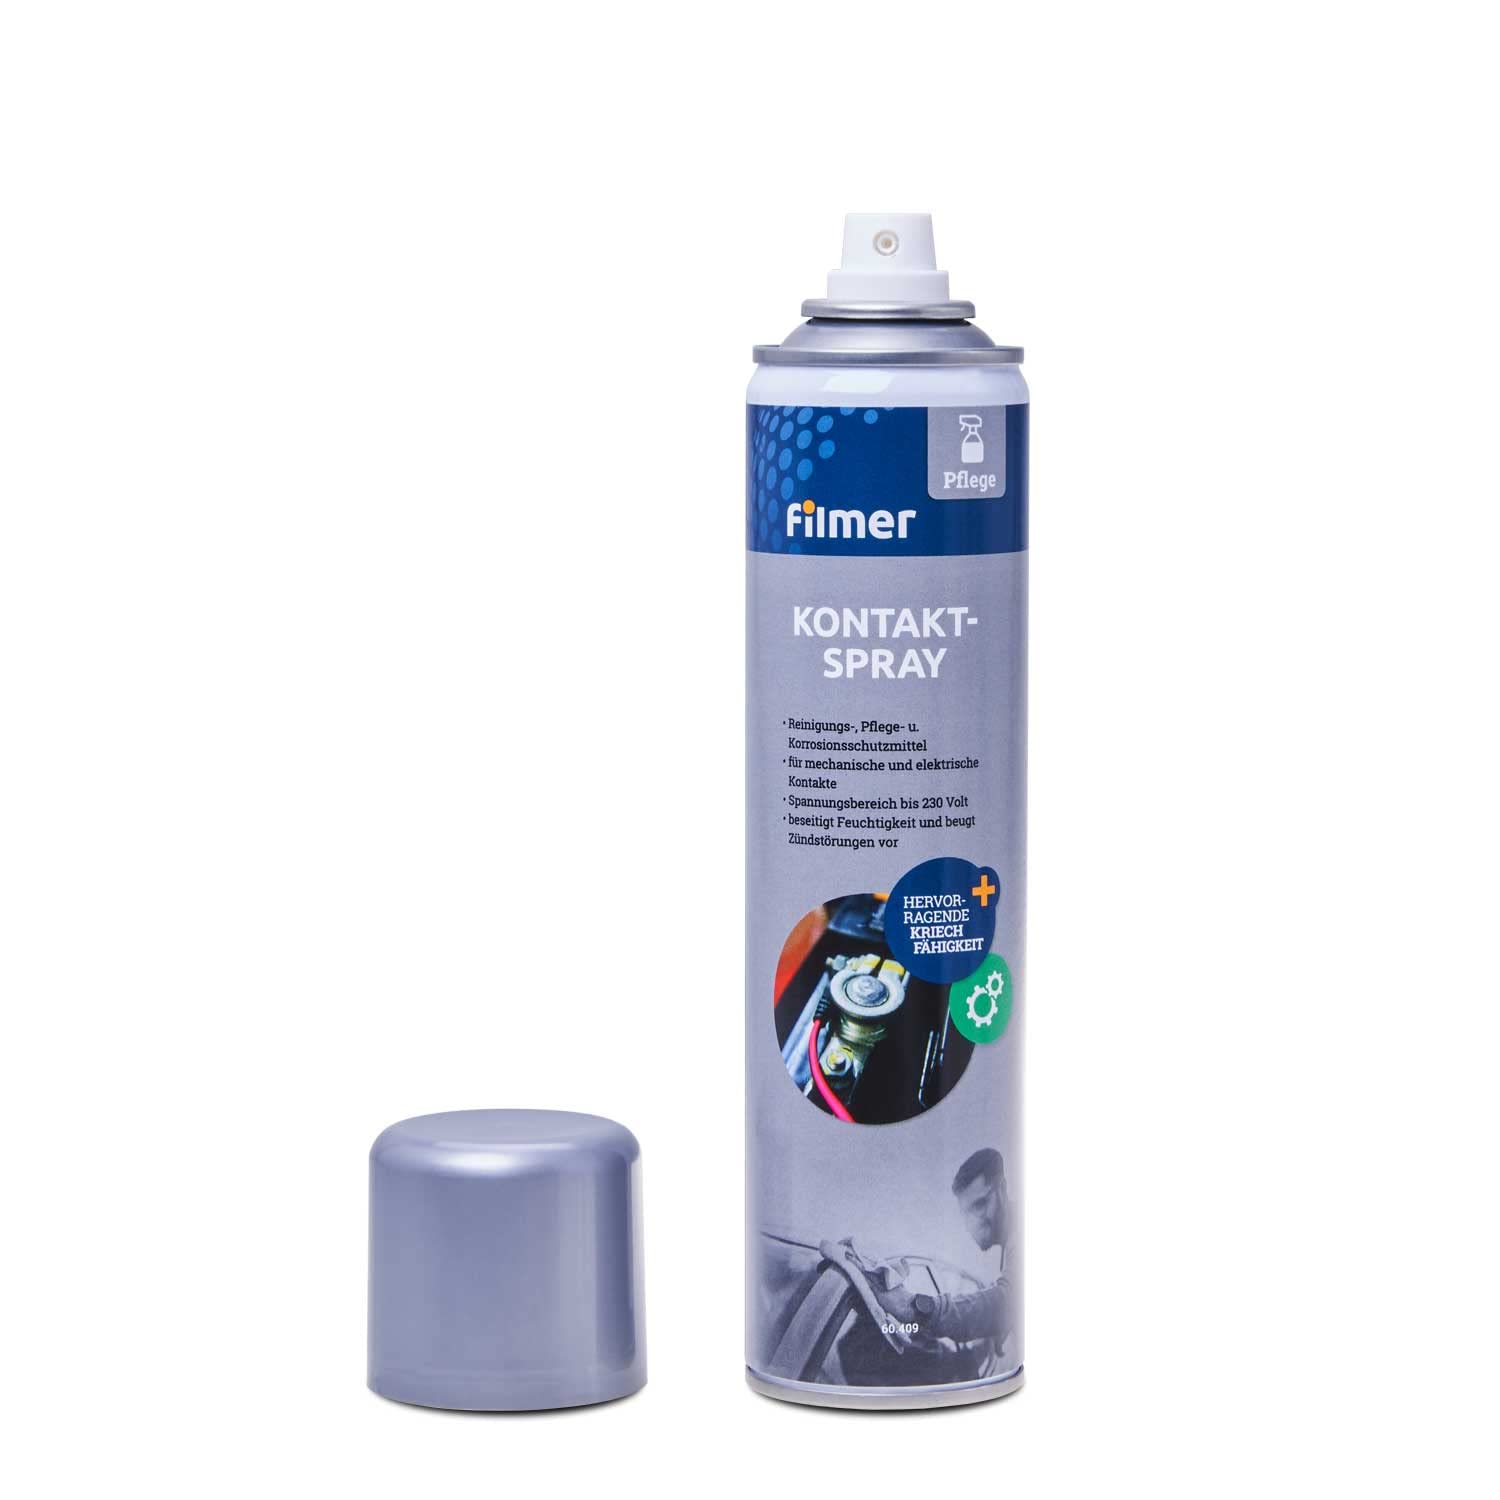 Kontakt-Spray 300ml, Reinigungs-, Pflege- u. Korrosionsschutzmittel für mechanische und elektrische Kontakte bis 230 Volt von BISOMO